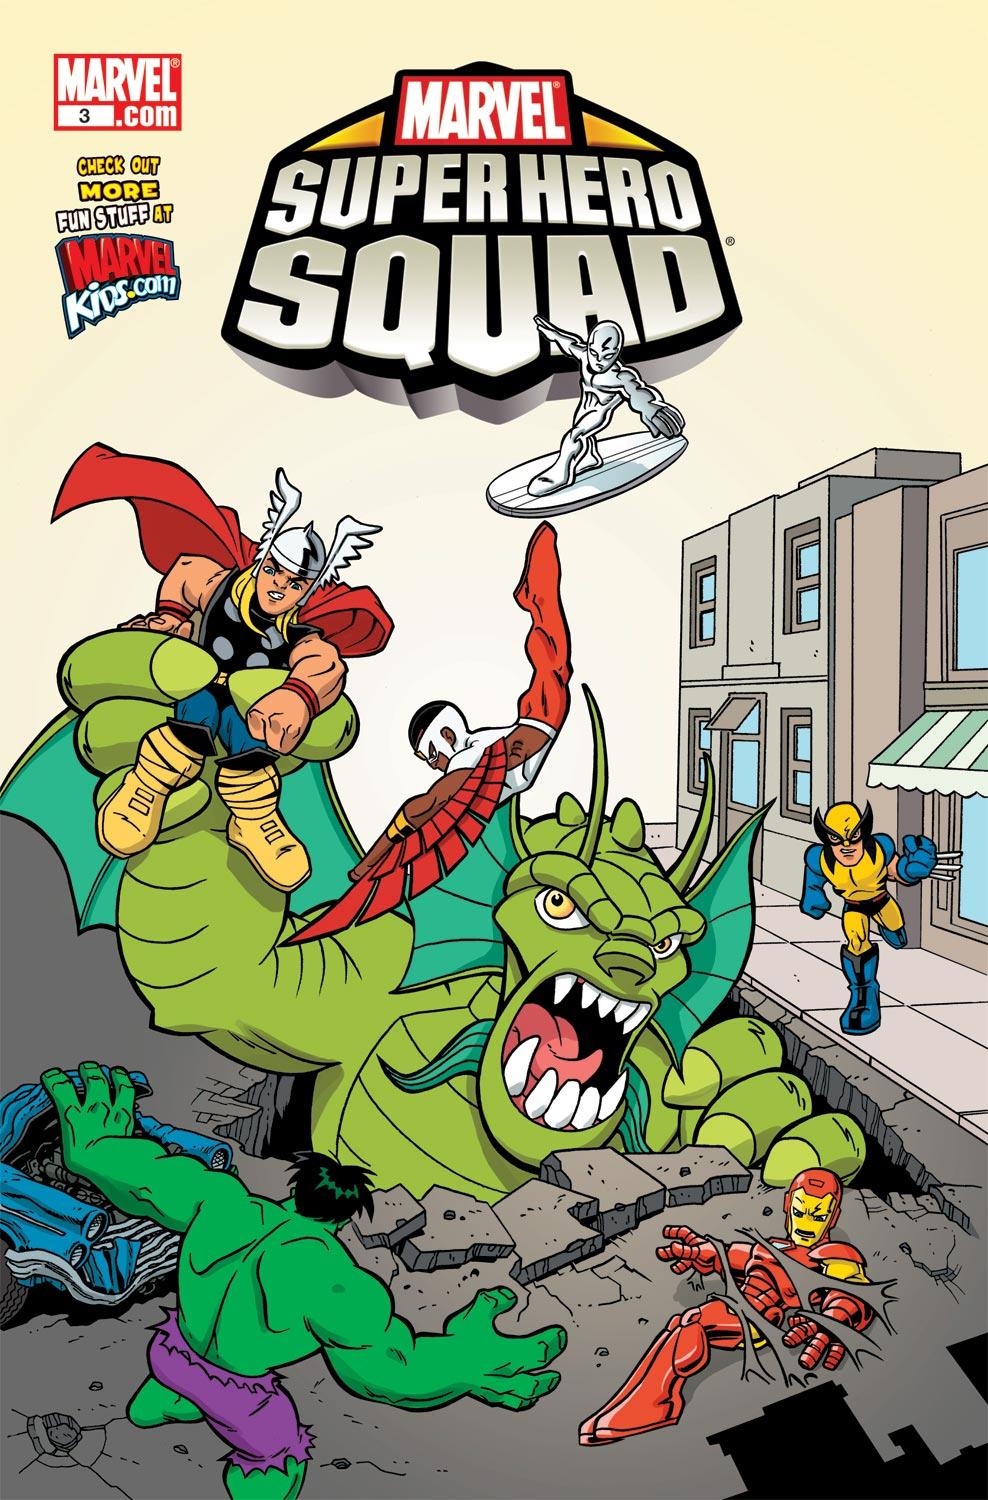 Marvel Super Hero Squad (2009) #3